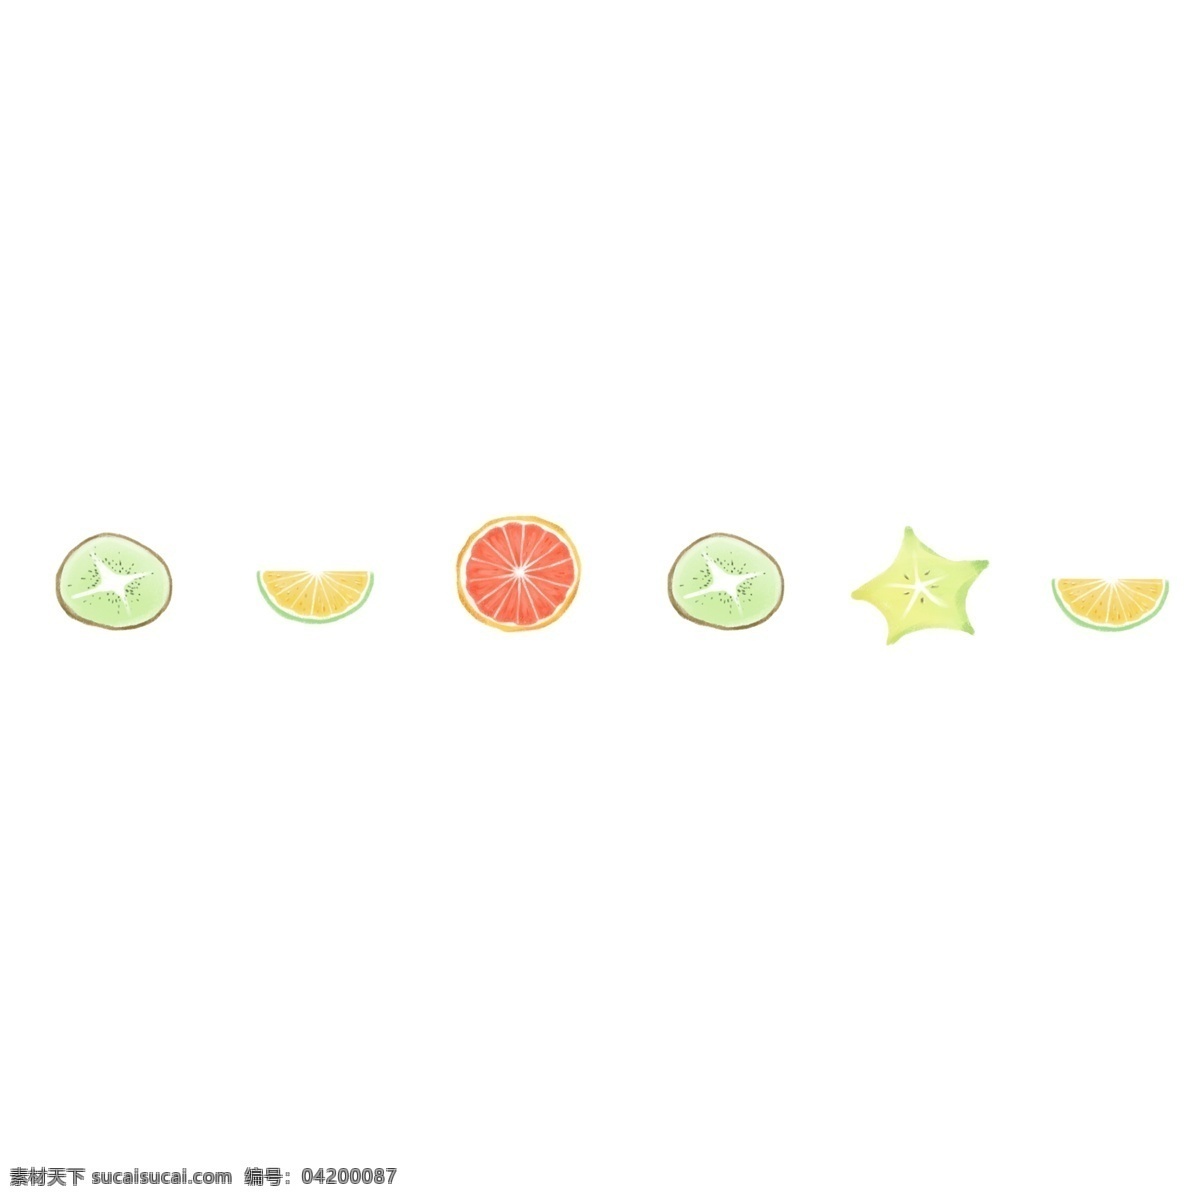 各种 水果 分割线 插画 水果分割线 柠檬分割线 杨桃 柠檬 插图 柚子 橙子 猕猴桃